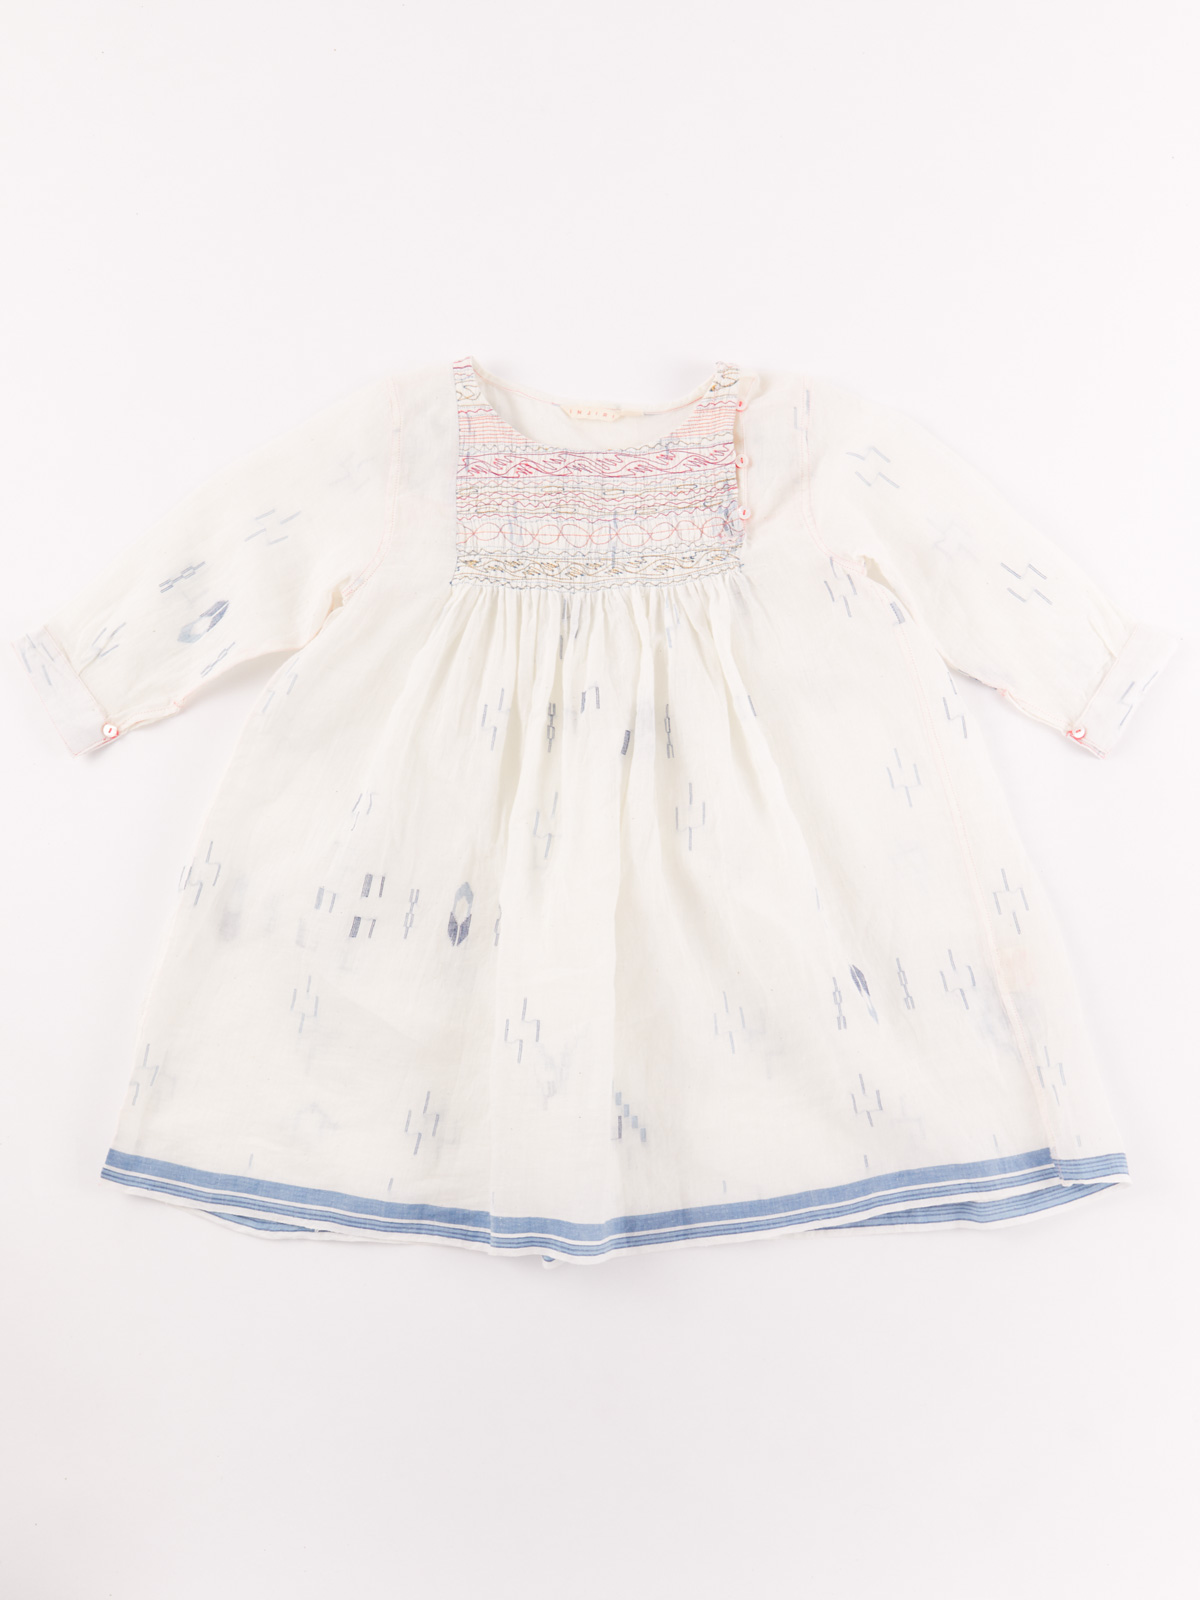 injiri white baby dress with rouching